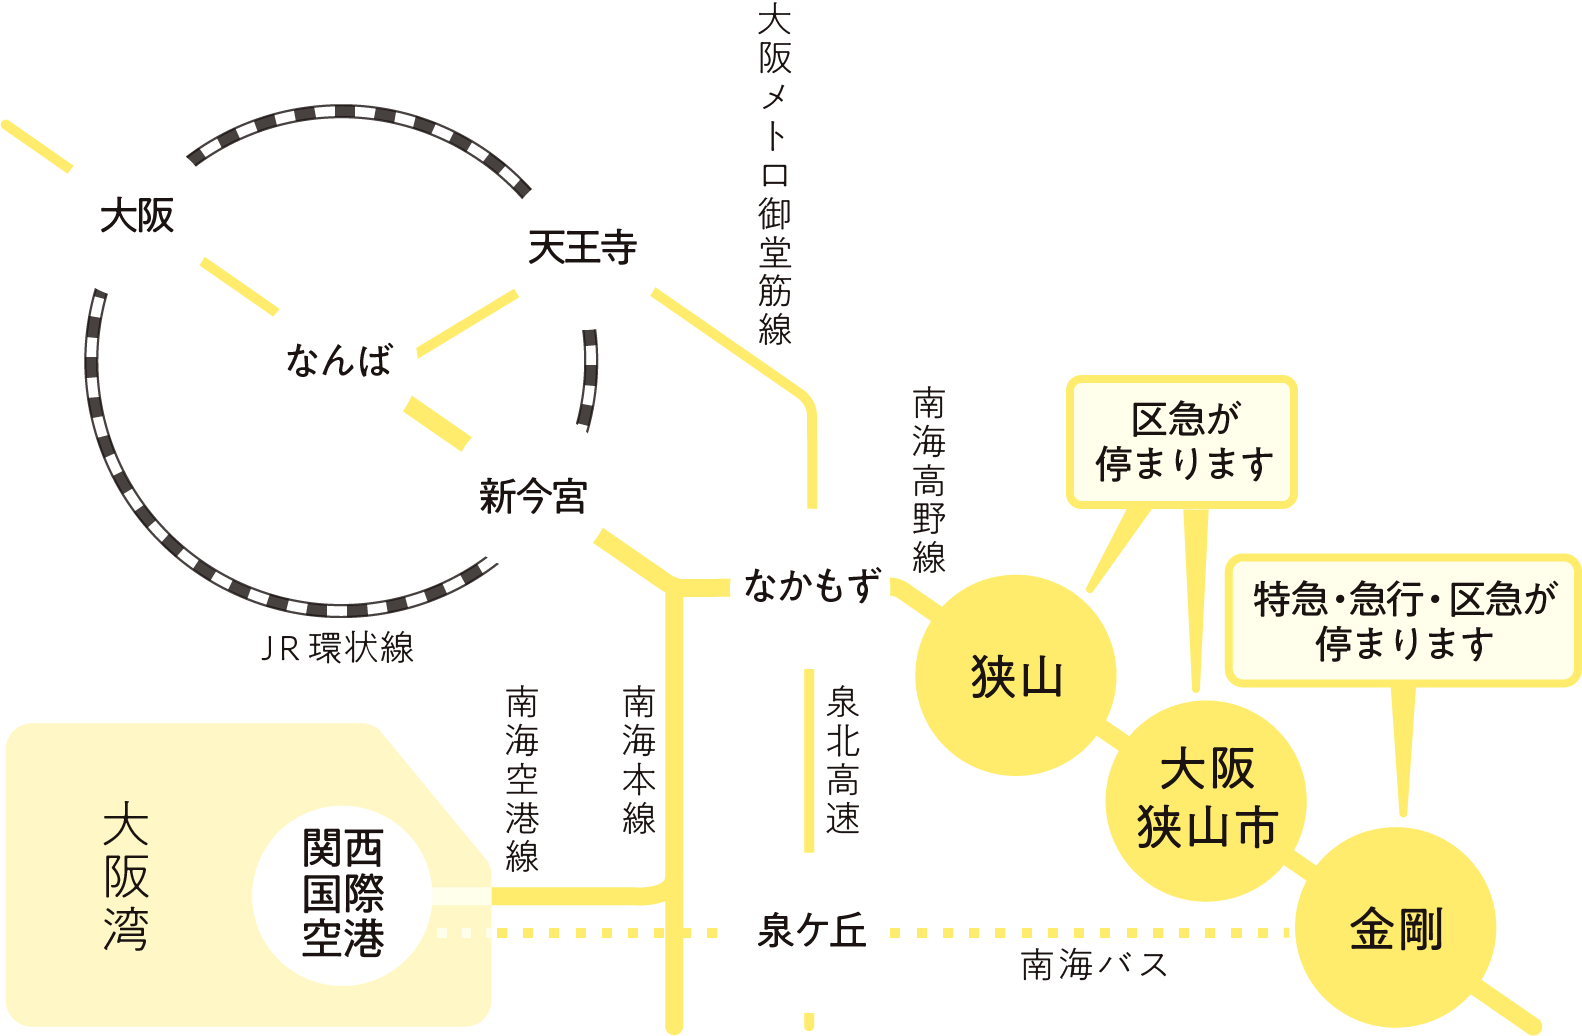 簡易的な路線図のイラスト。南海高野線にある大阪狭山市内の「狭山」「大阪狭山市」「金剛」の3駅から、大阪市内までアクセス可能であることがわかる。南海高野線の他に、大阪メトロ御堂筋線やJR環状線、南海本線、南海空港線、泉北高速、南海バスが描かれている。また、関西国際空港へのアクセス手段があることもわかる。